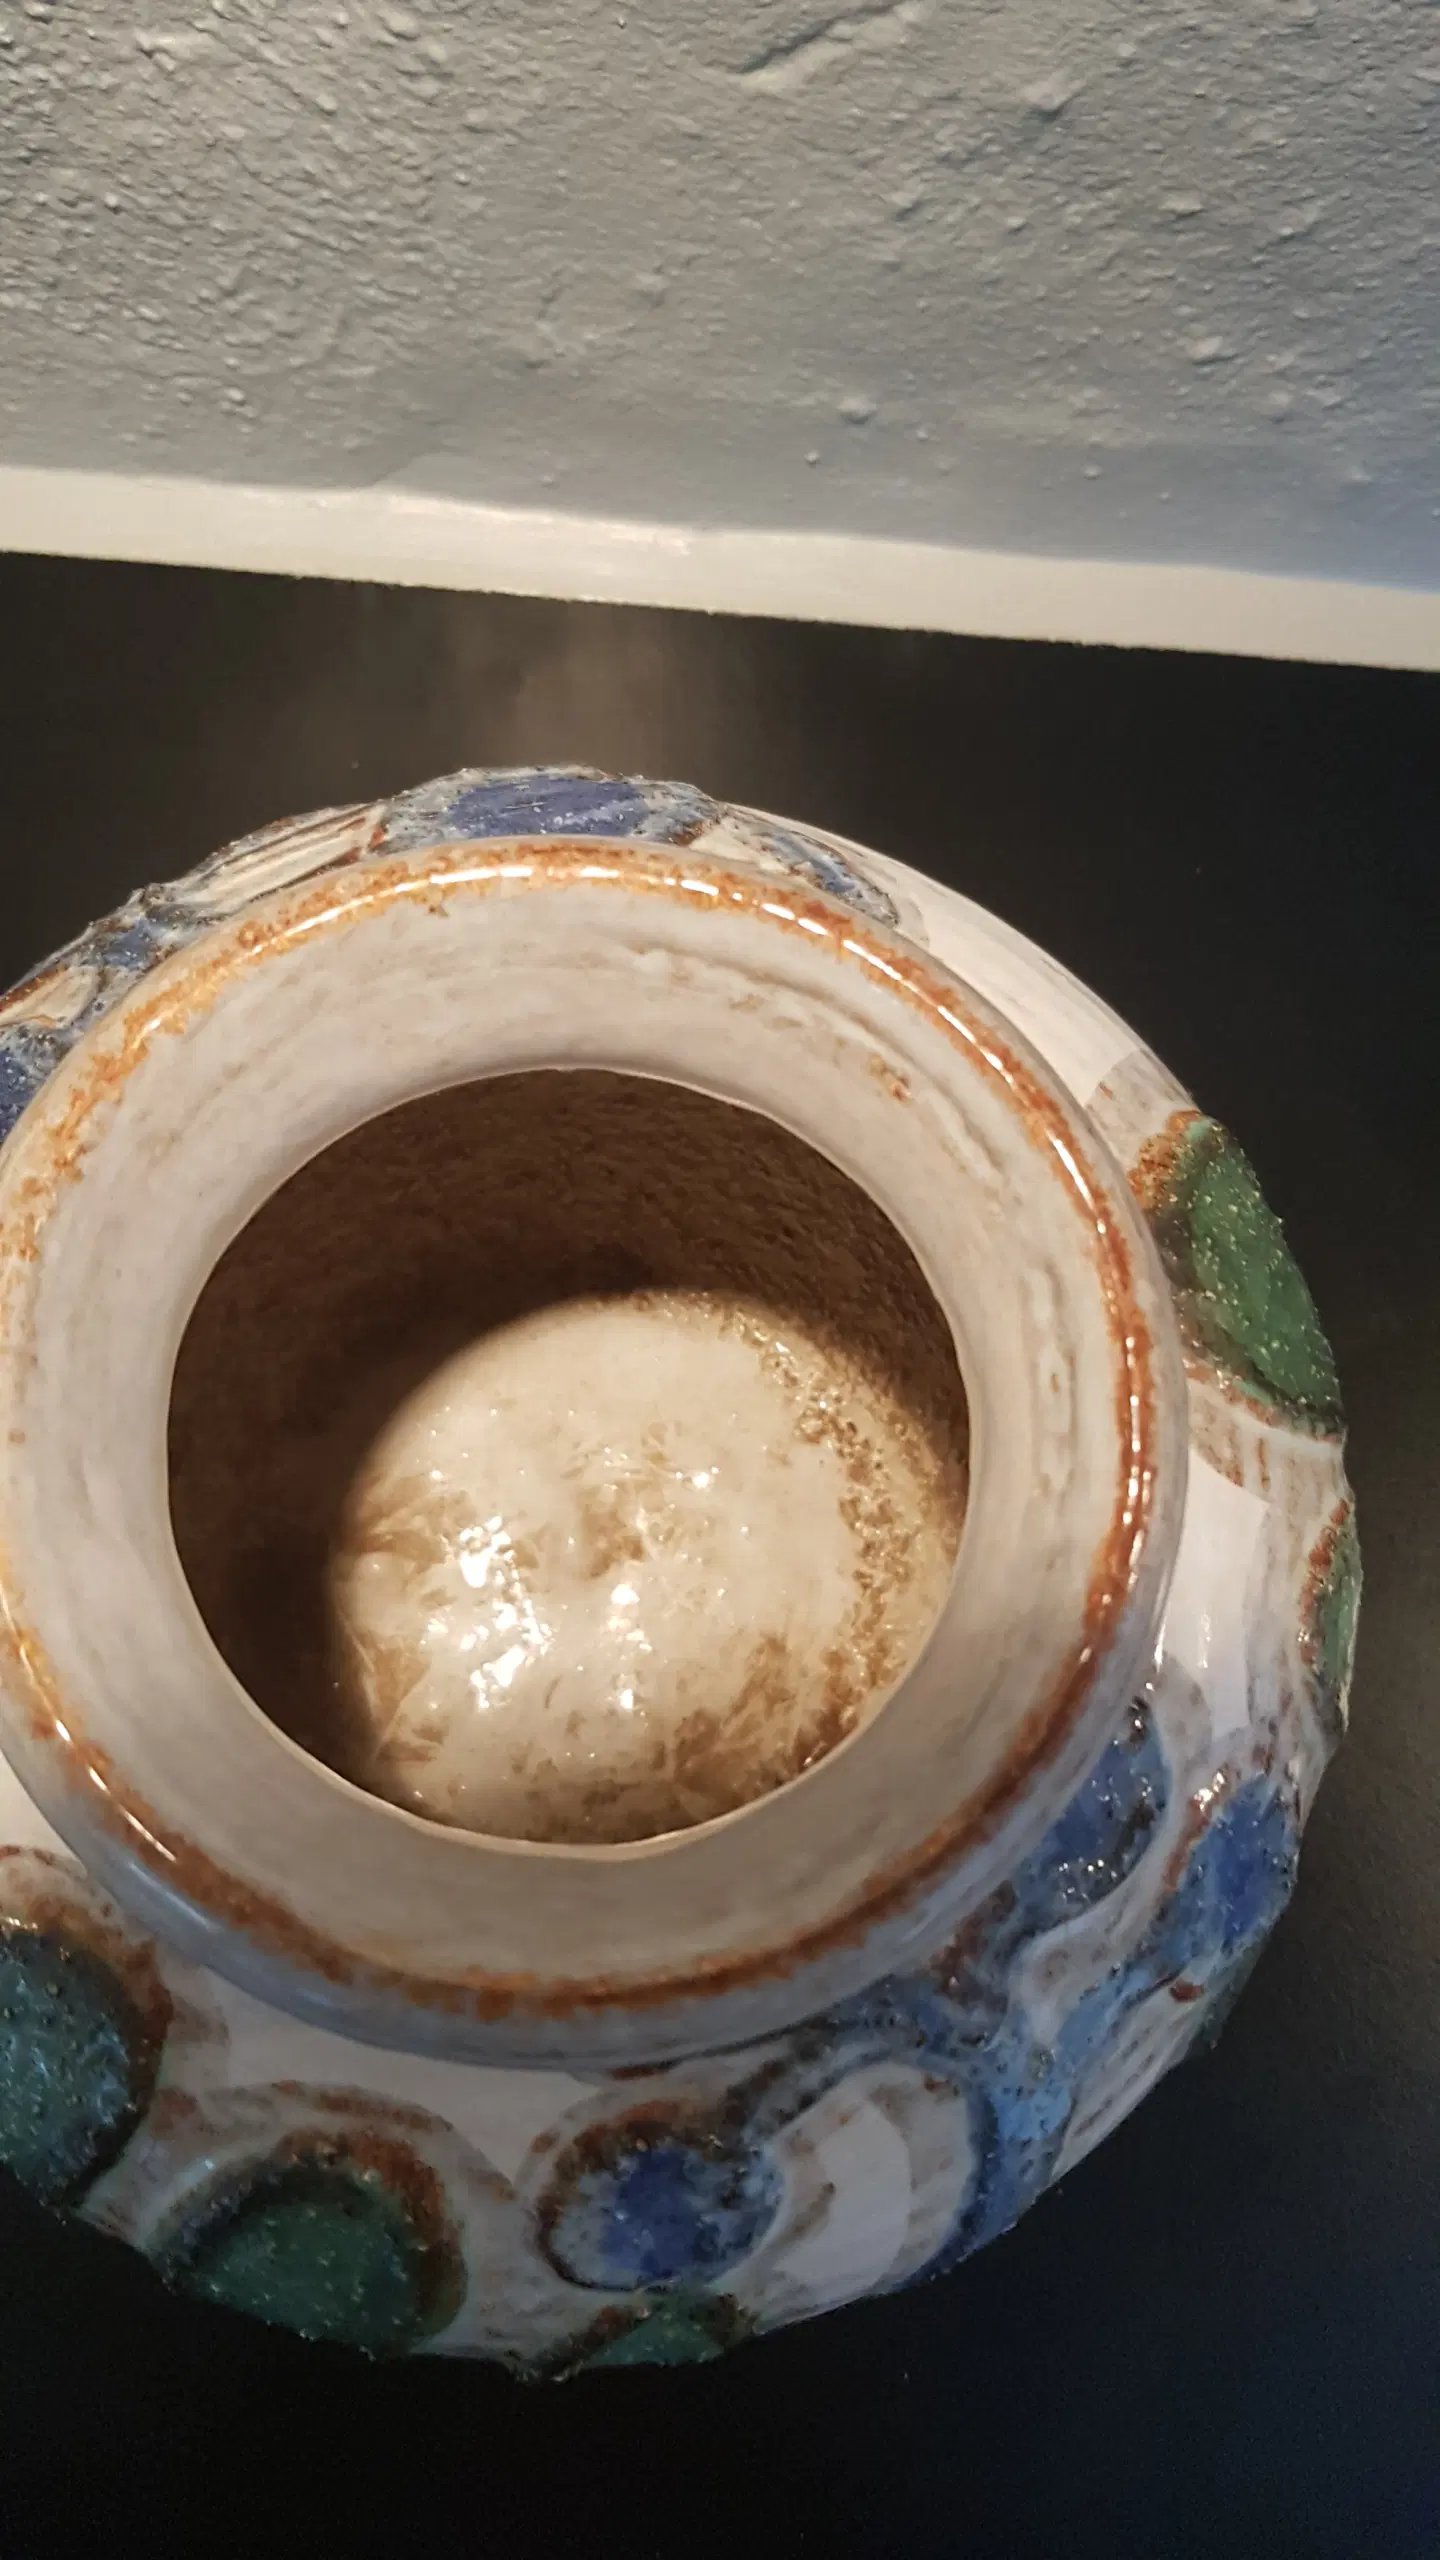 Søholm keramik vase